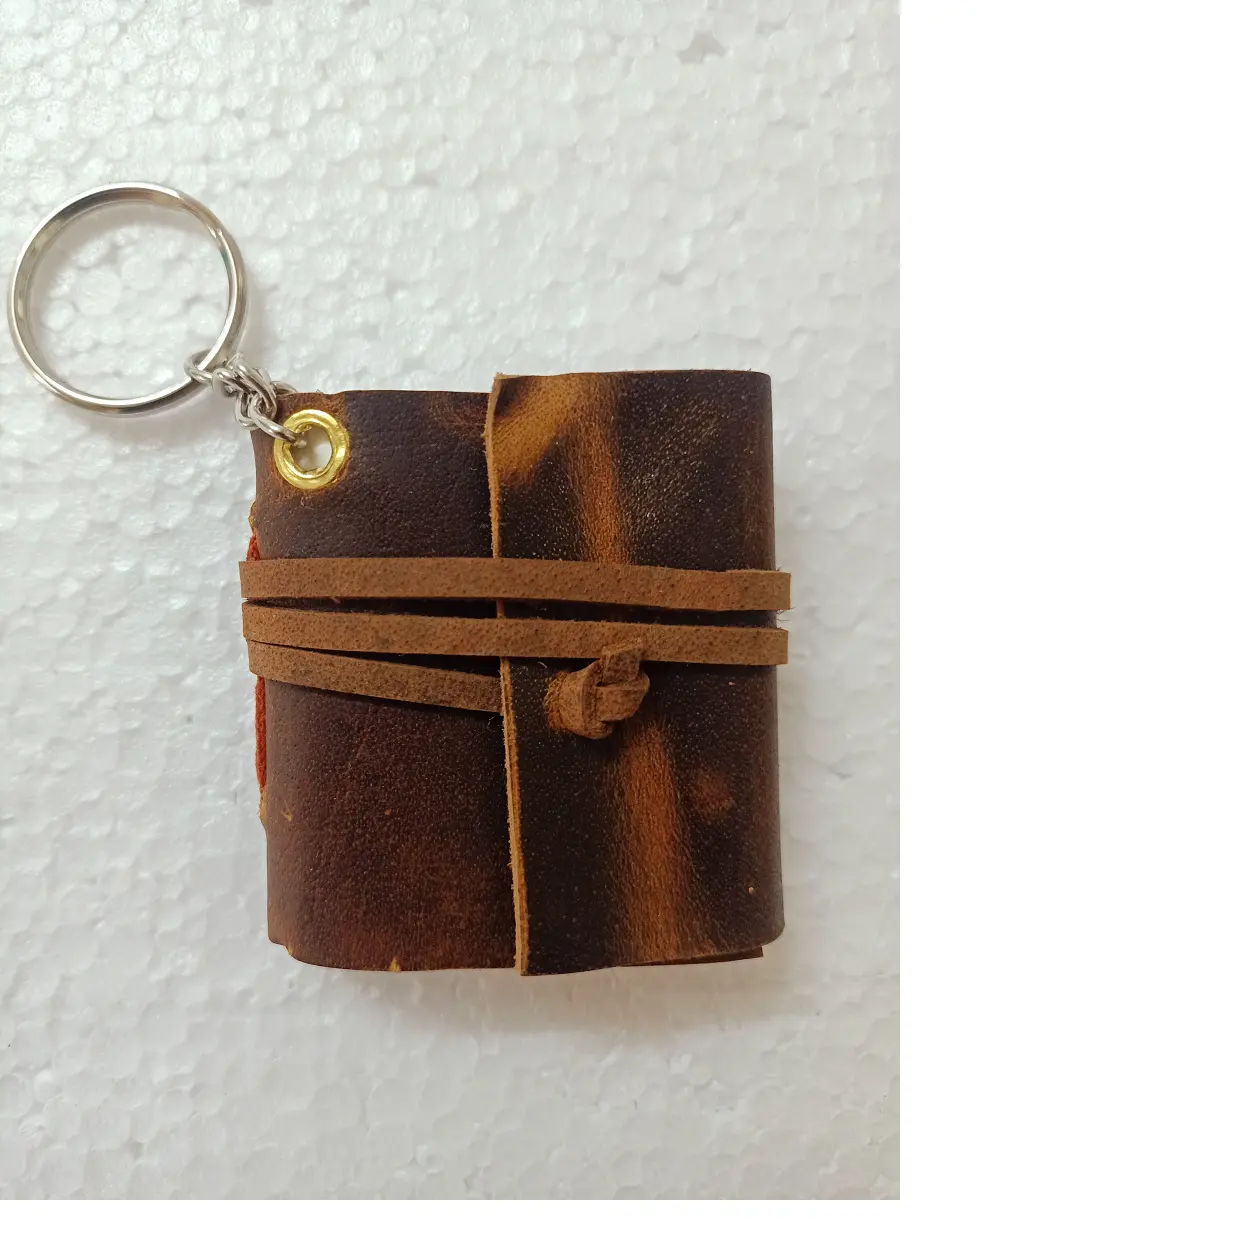 Mini-diários de couro com chave personalizados com mini chaveiro feitos usando papel de algodão feito à mão, ideais para revenda